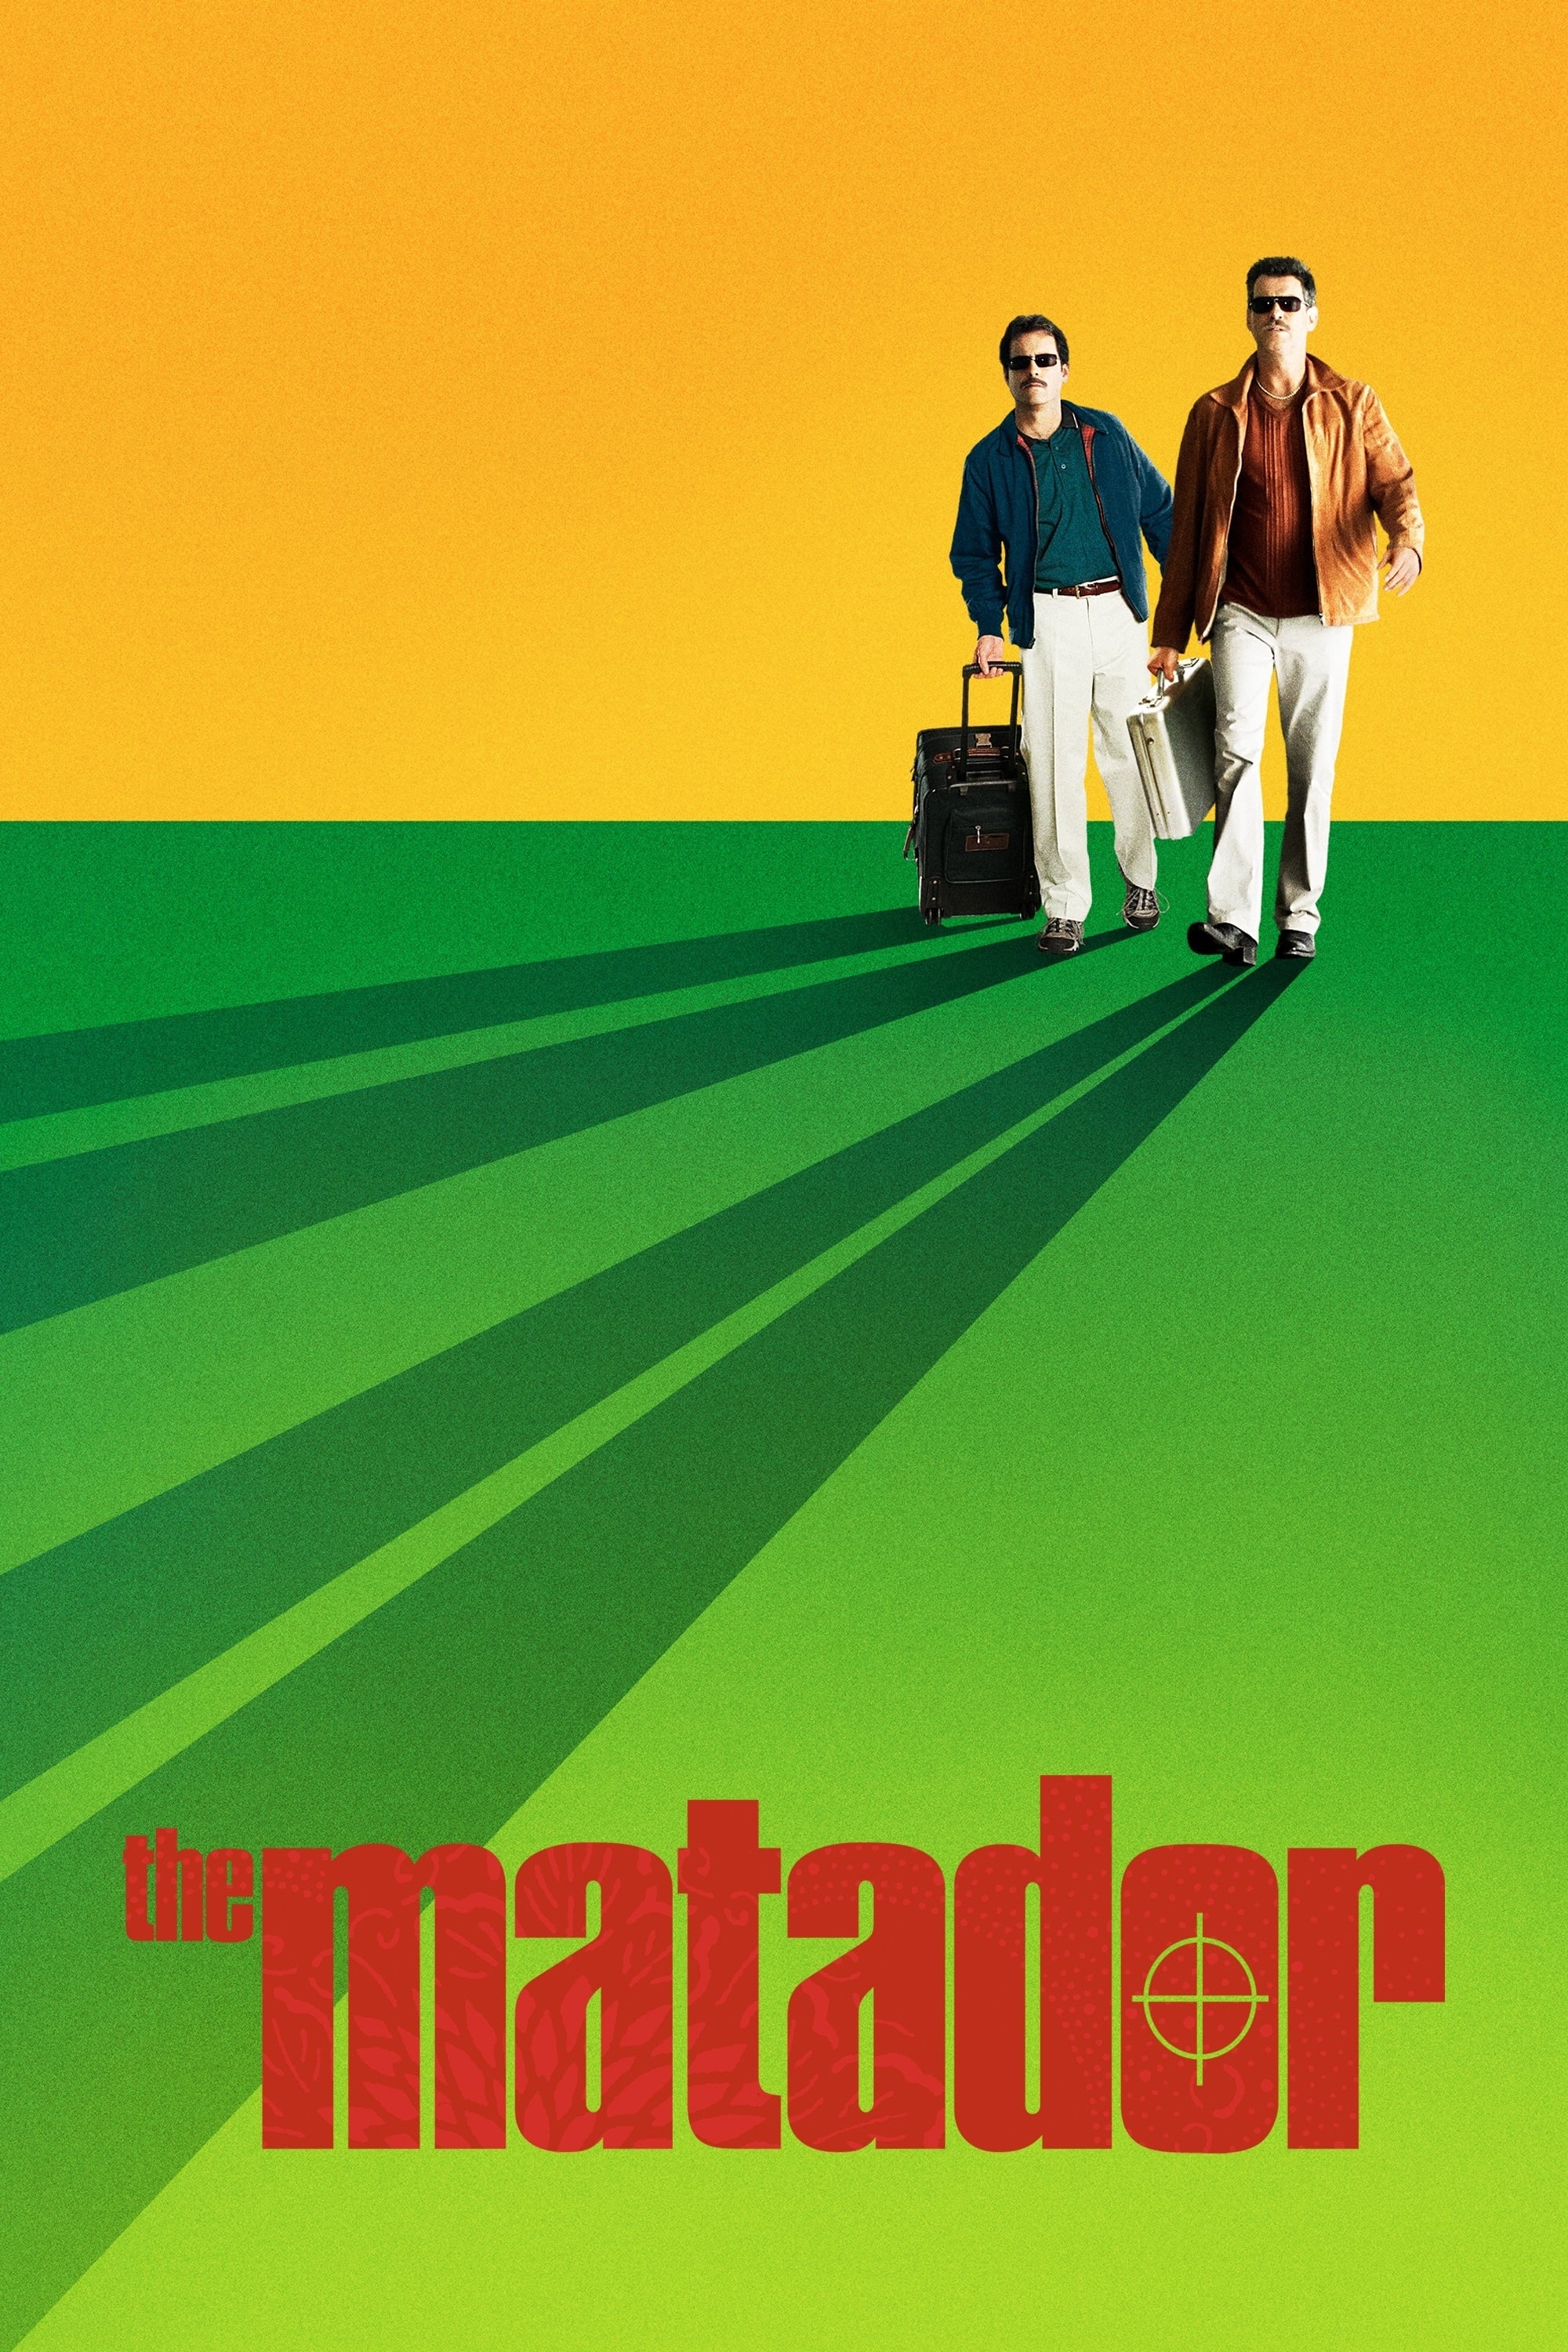 Võ Sĩ Đấu Bò - The Matador (2005)